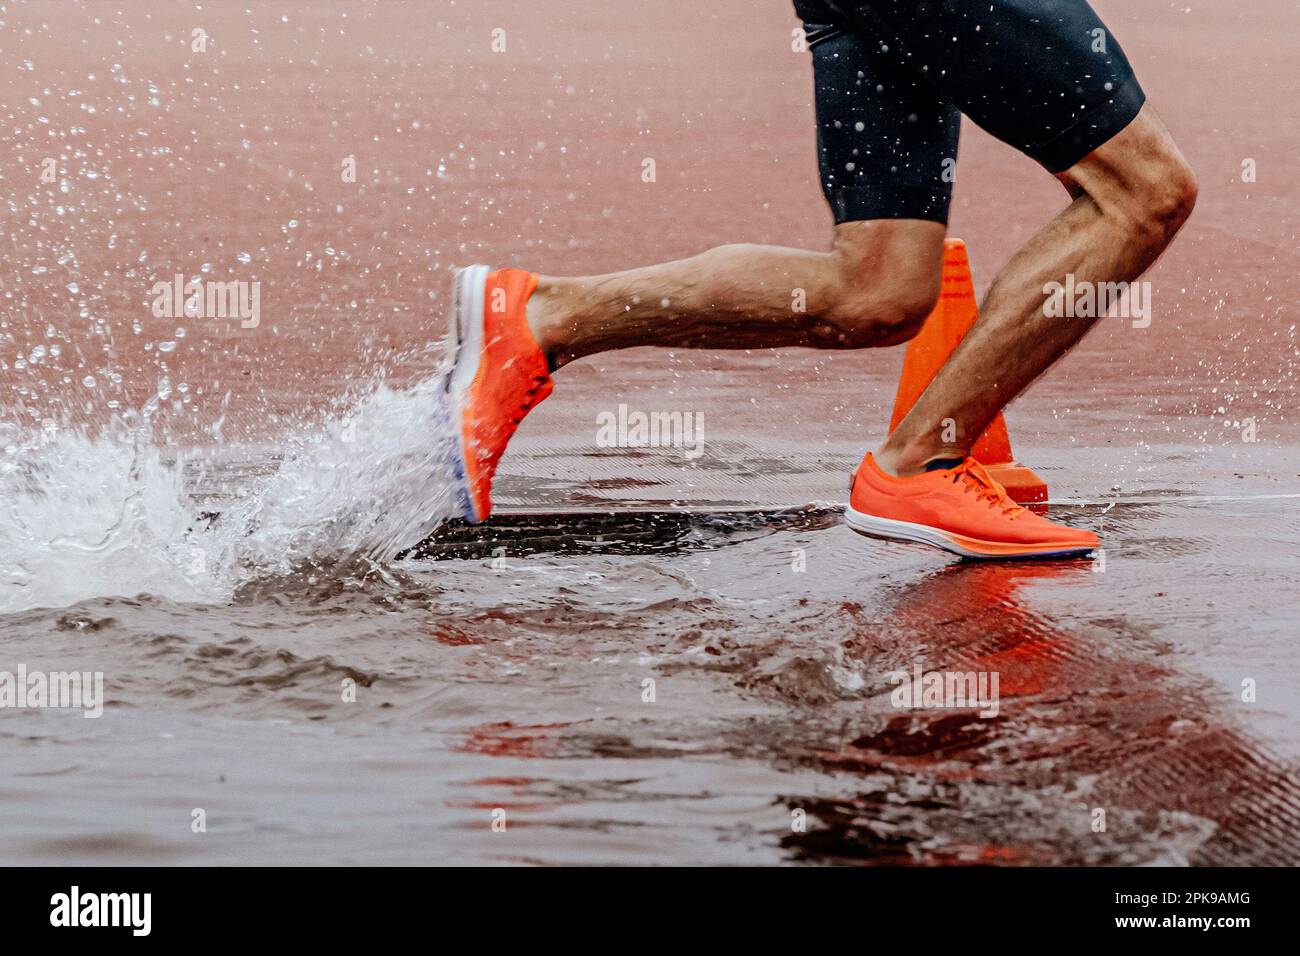 Beine männlicher Läufer, der ein Steeplechase-Rennen läuft, Meisterschafts-Wettkampf, Wasserspritzer Stockfoto